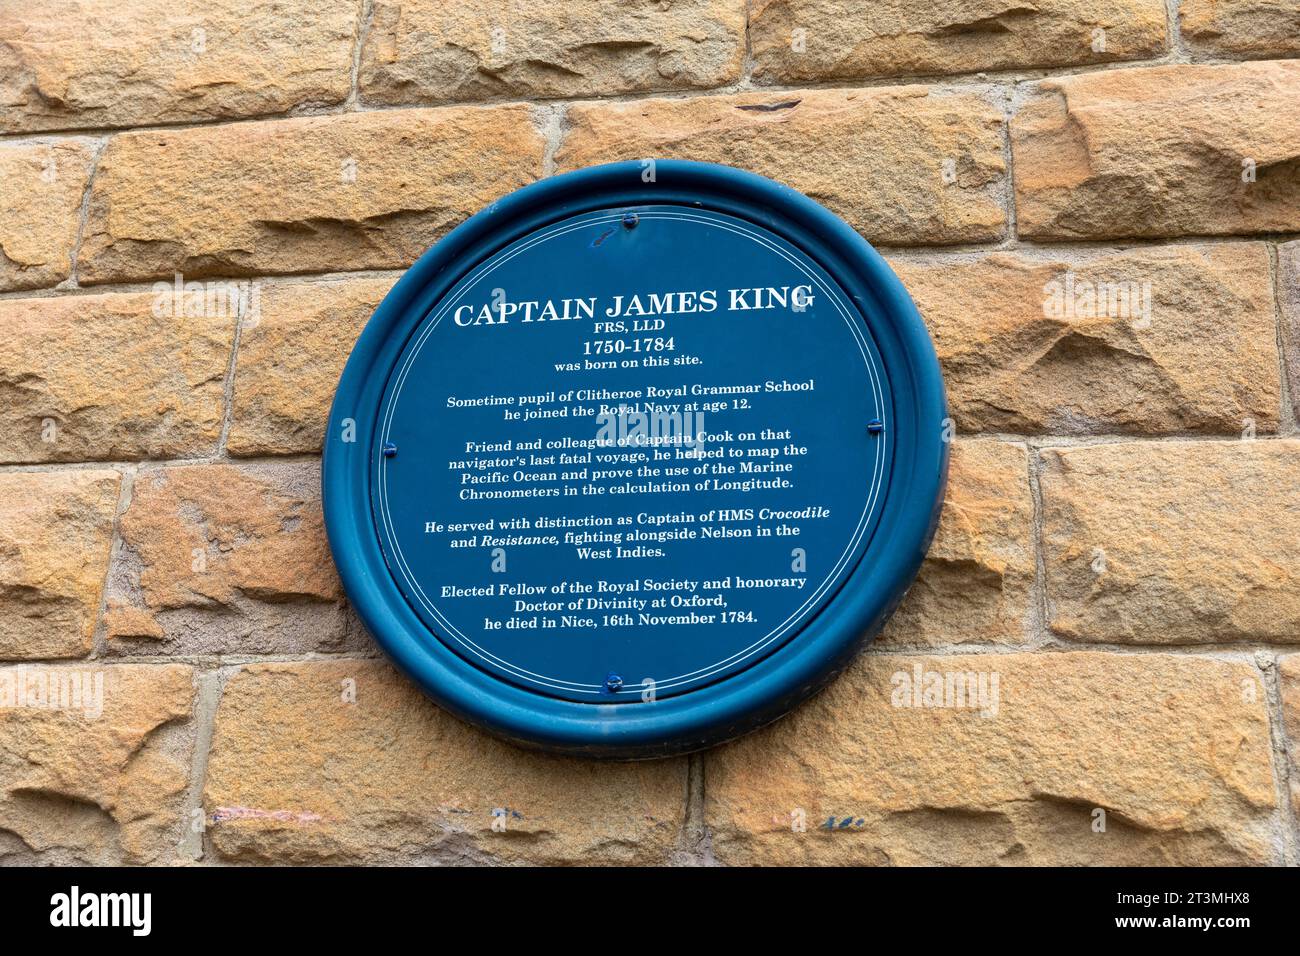 Captain James King, blaue Plakette im Stadtzentrum von Clitheroe, um den Geburtsort dieses Offiziers der Royal Navy zu markieren, der mit Captain James Cook, England, diente Stockfoto